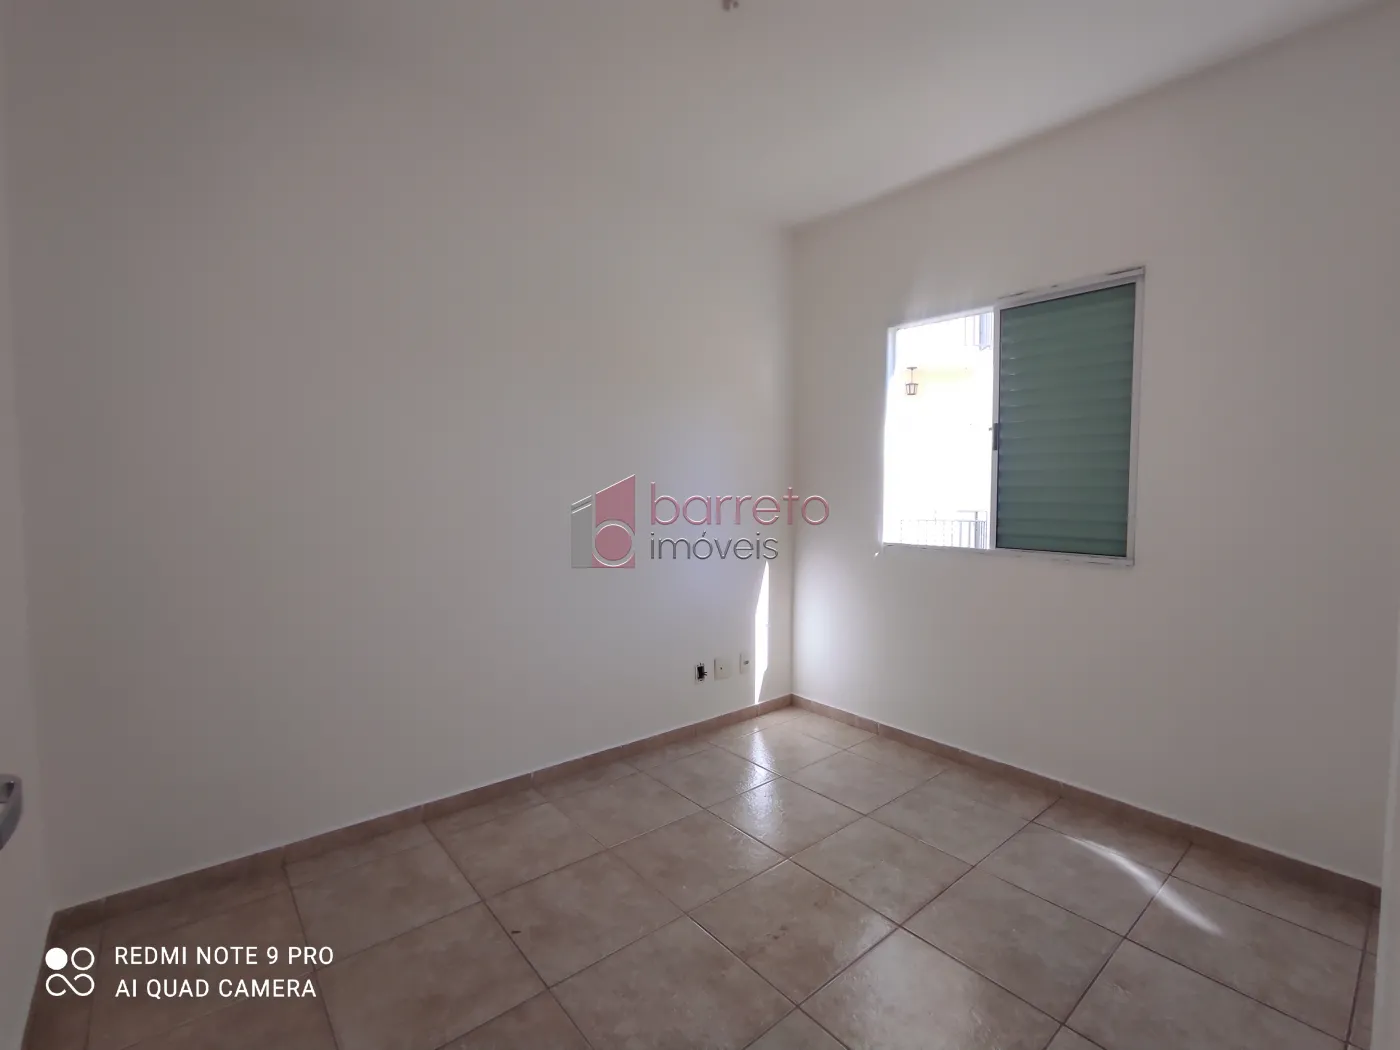 Alugar Apartamento / Padrão em Jundiaí R$ 1.500,00 - Foto 3